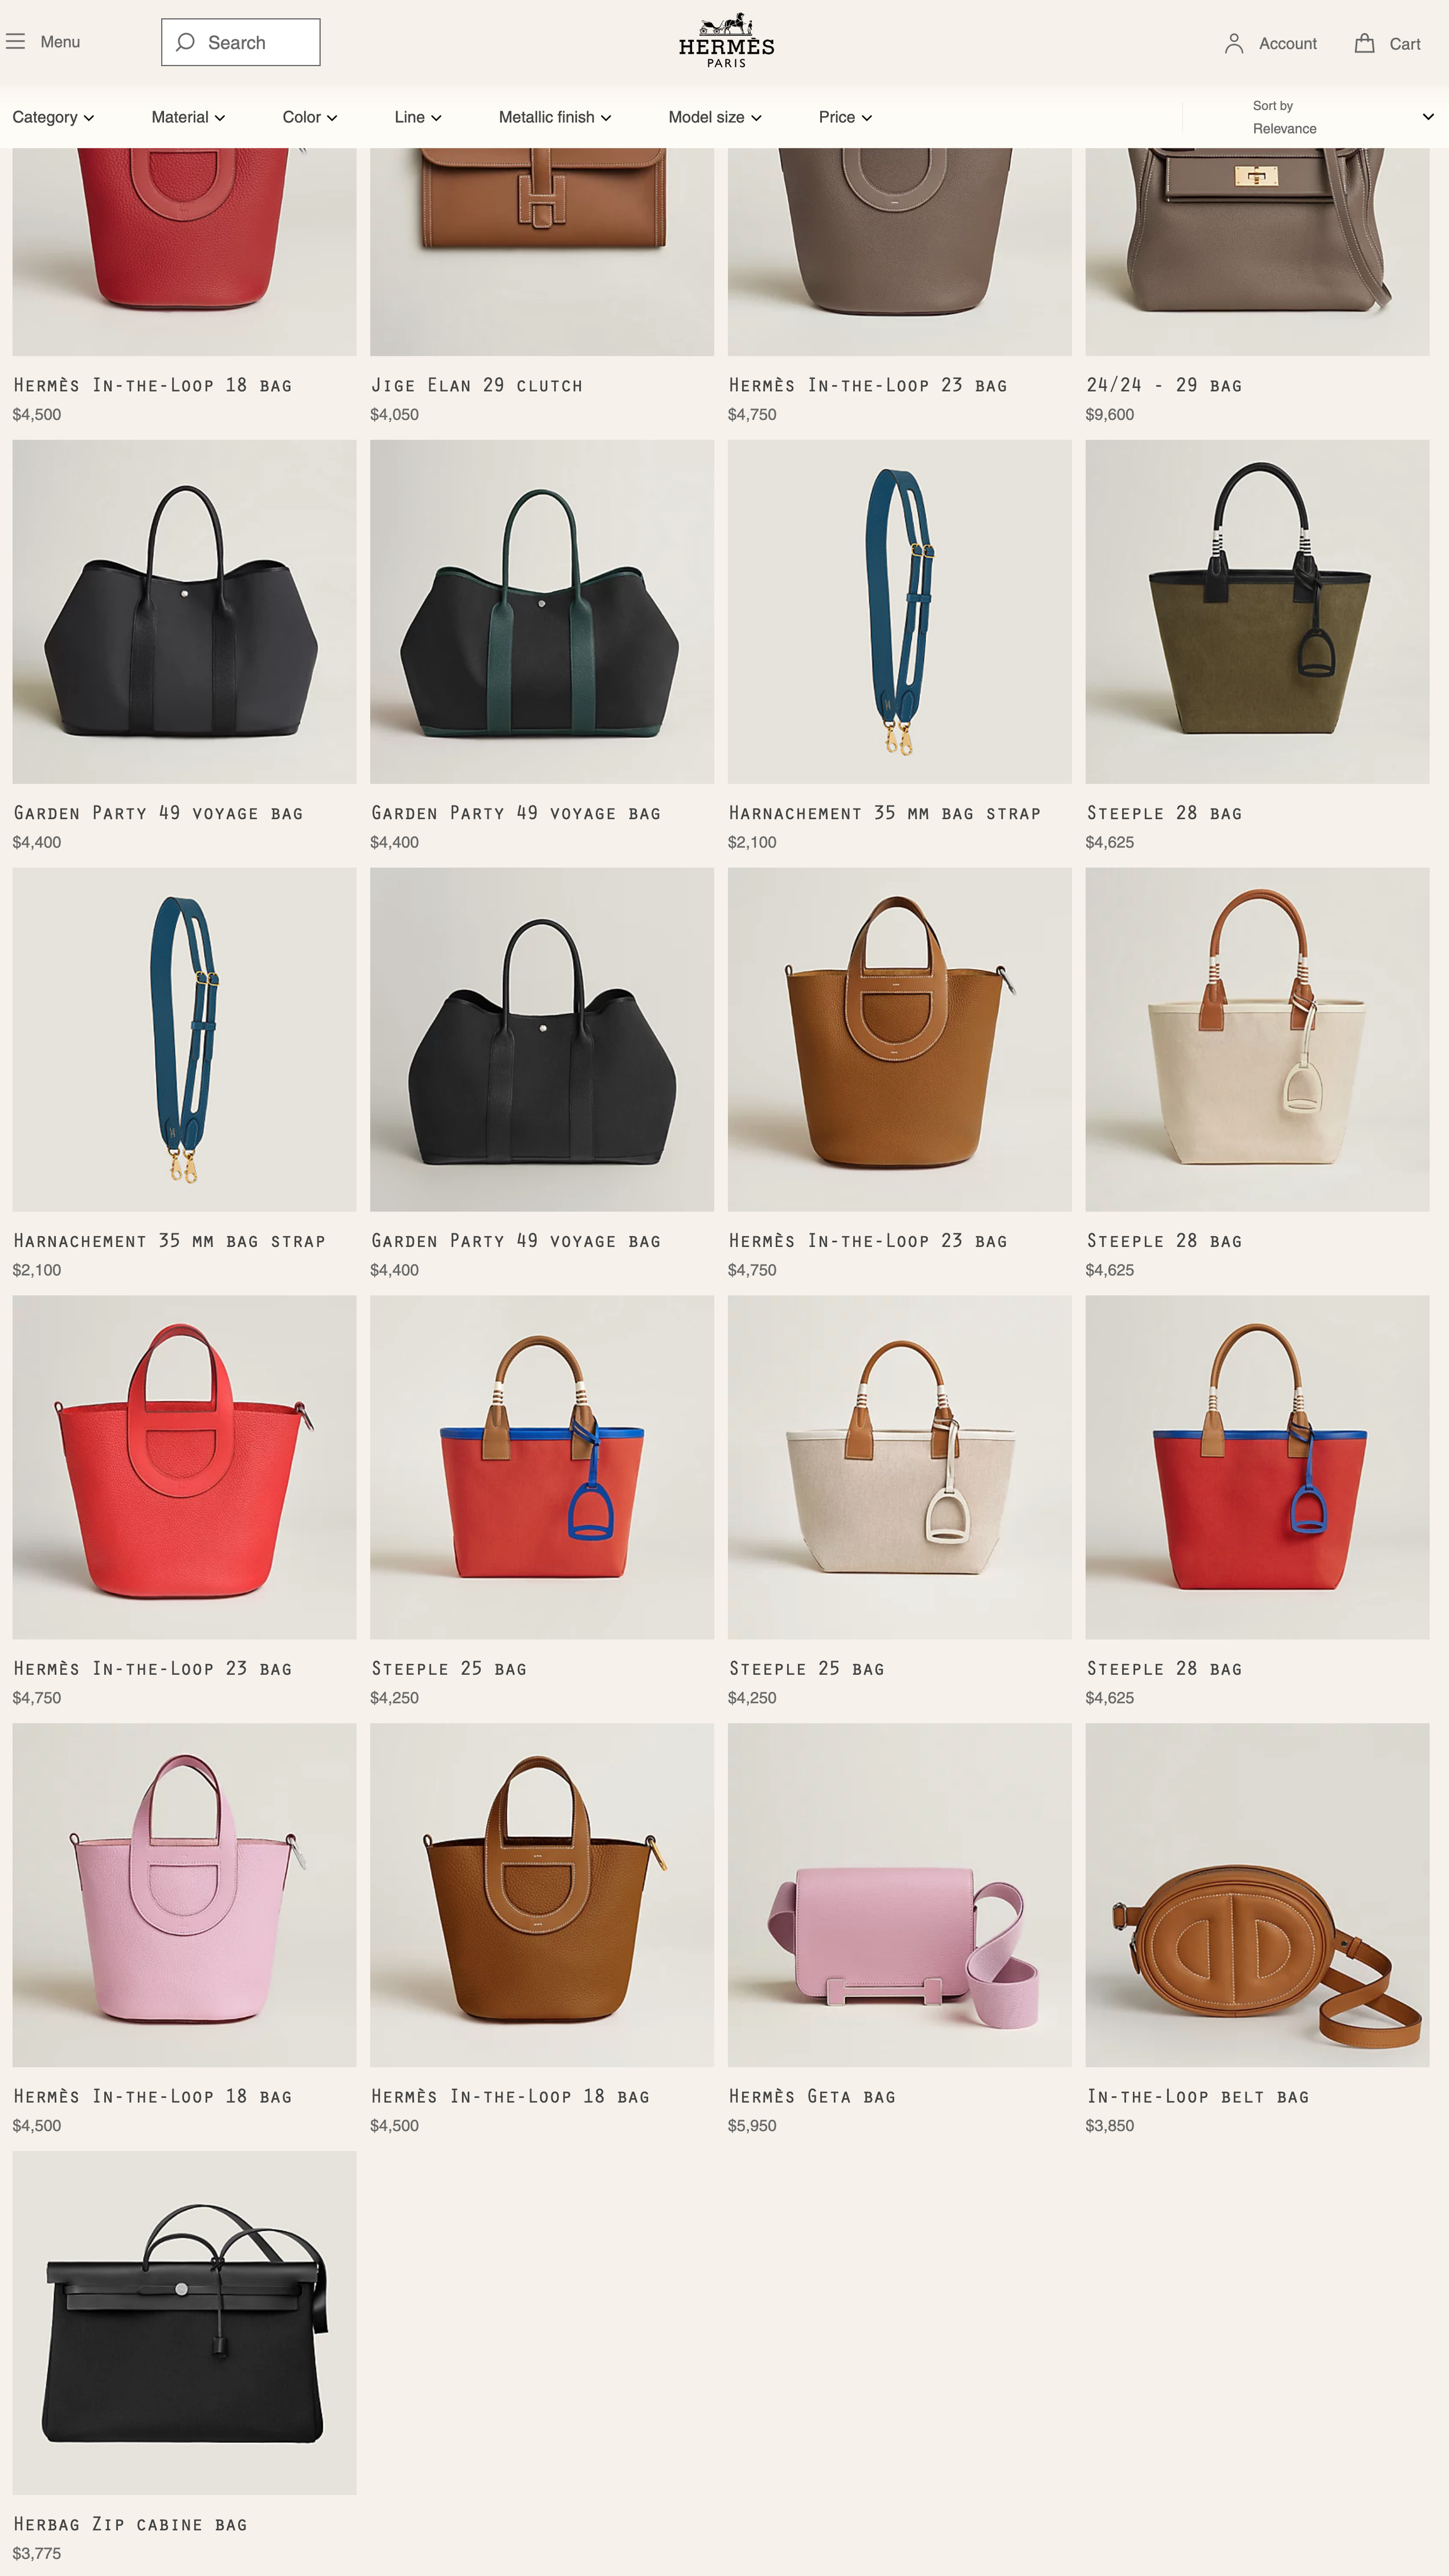 Types of Hermes bags  Hermes handbags, Hermes bags, Hermes purse